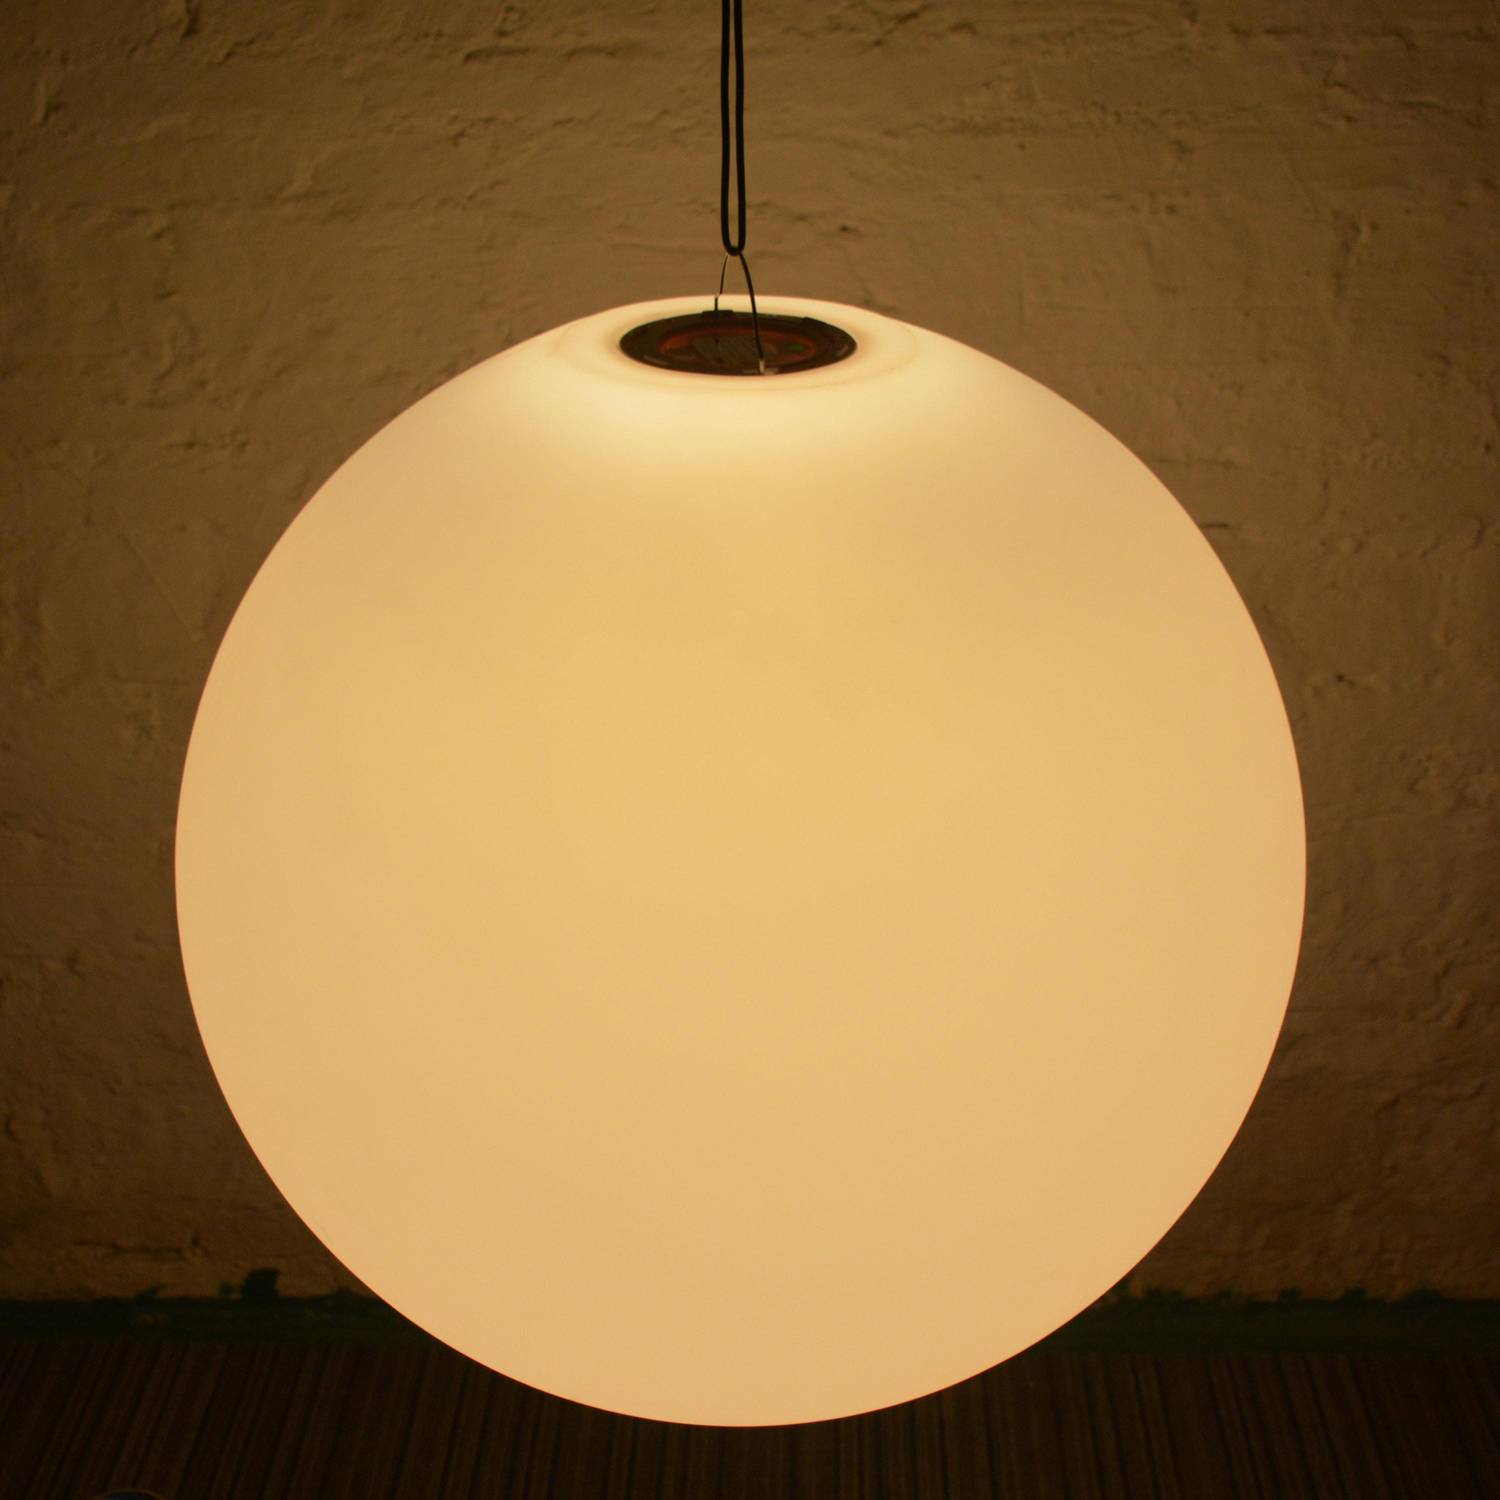 LED-Kugel 40cm - Dekorative Leuchtkugel, Ø40cm, warmweiß, mit Fernbedienung Photo7